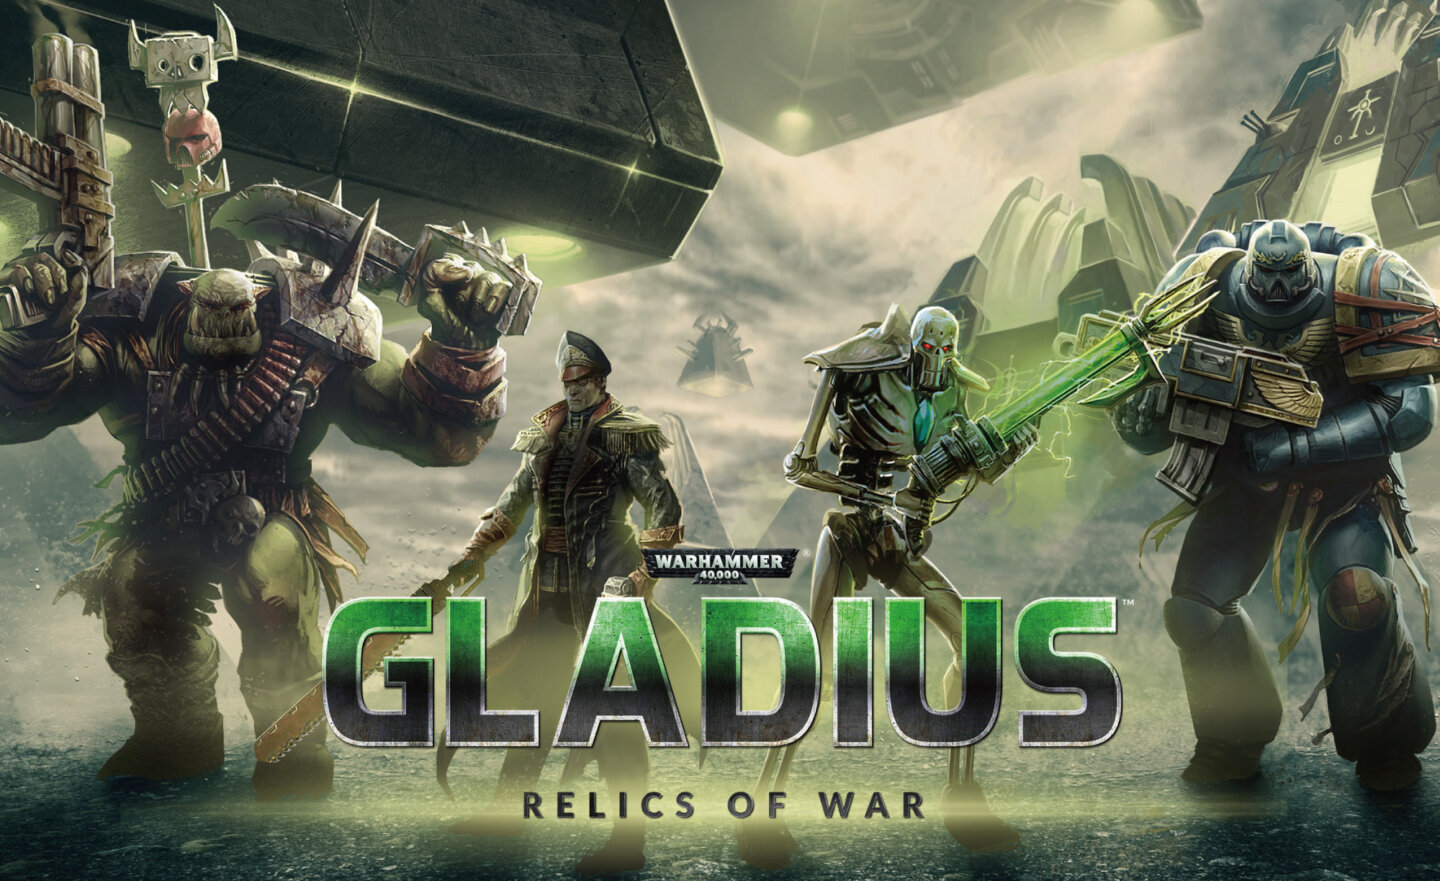 【限時免費】回合制策略遊戲《Warhammer 40,000: Gladius – Relics of War》放送中，2023 年 3 月 23 日 11:00 截止